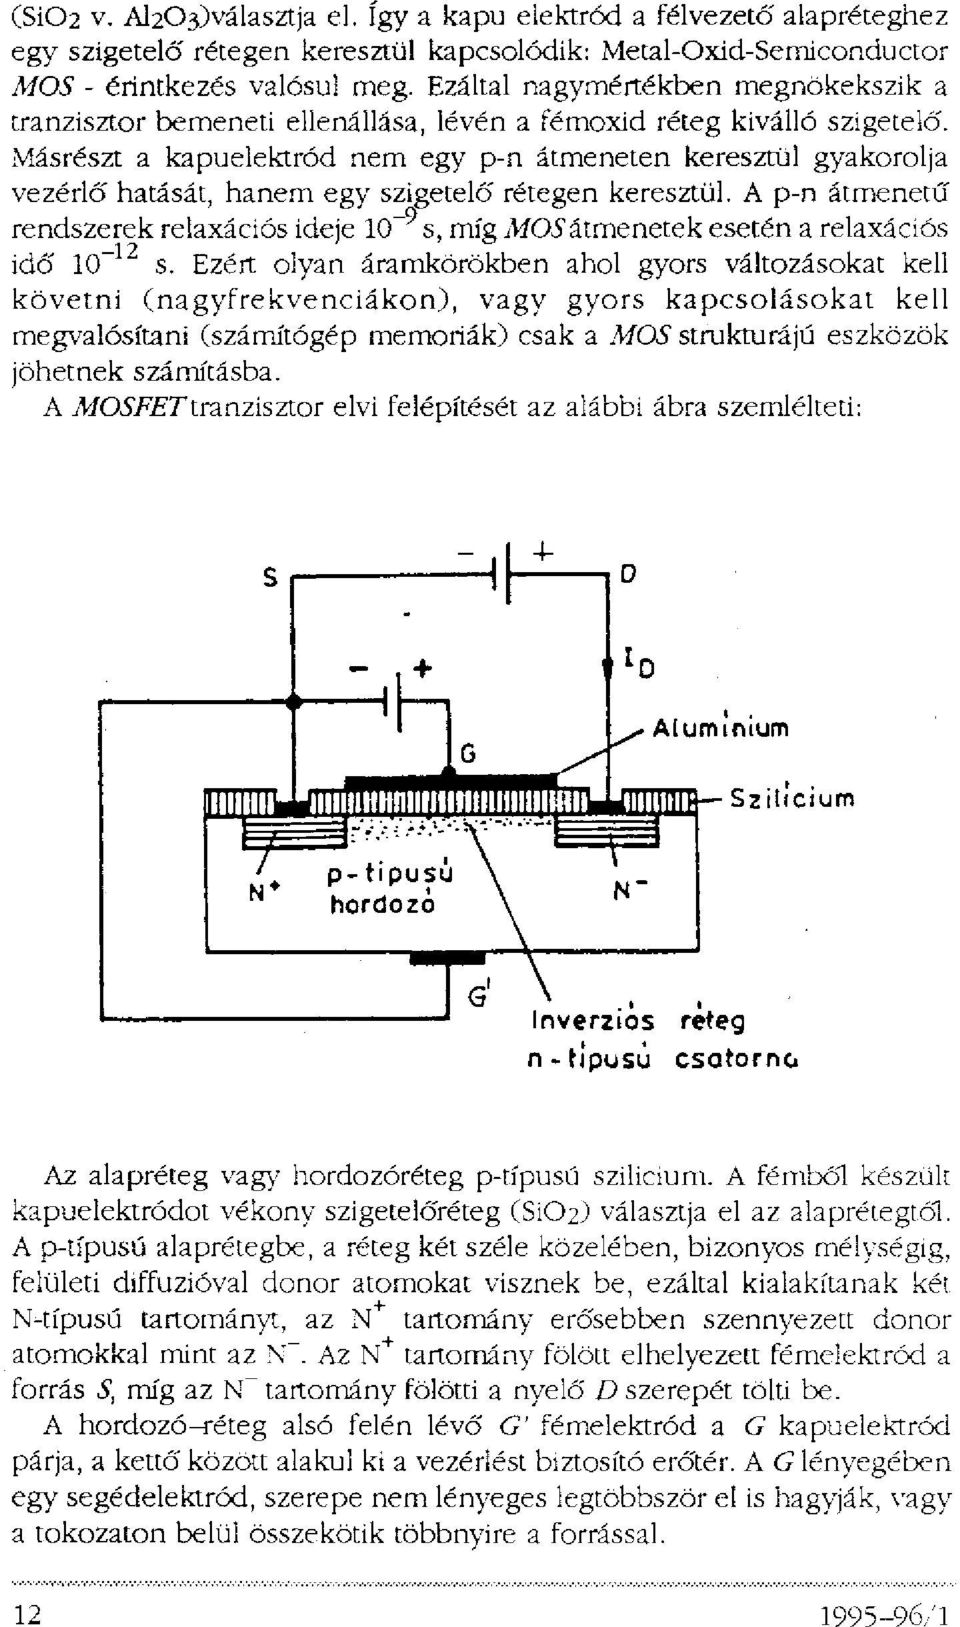 Másrészt a kapuelektród nem egy p-n átmeneten keresztül gyakorolja vezérlő hatását, hanem egy szigetelő rétegen keresztül.